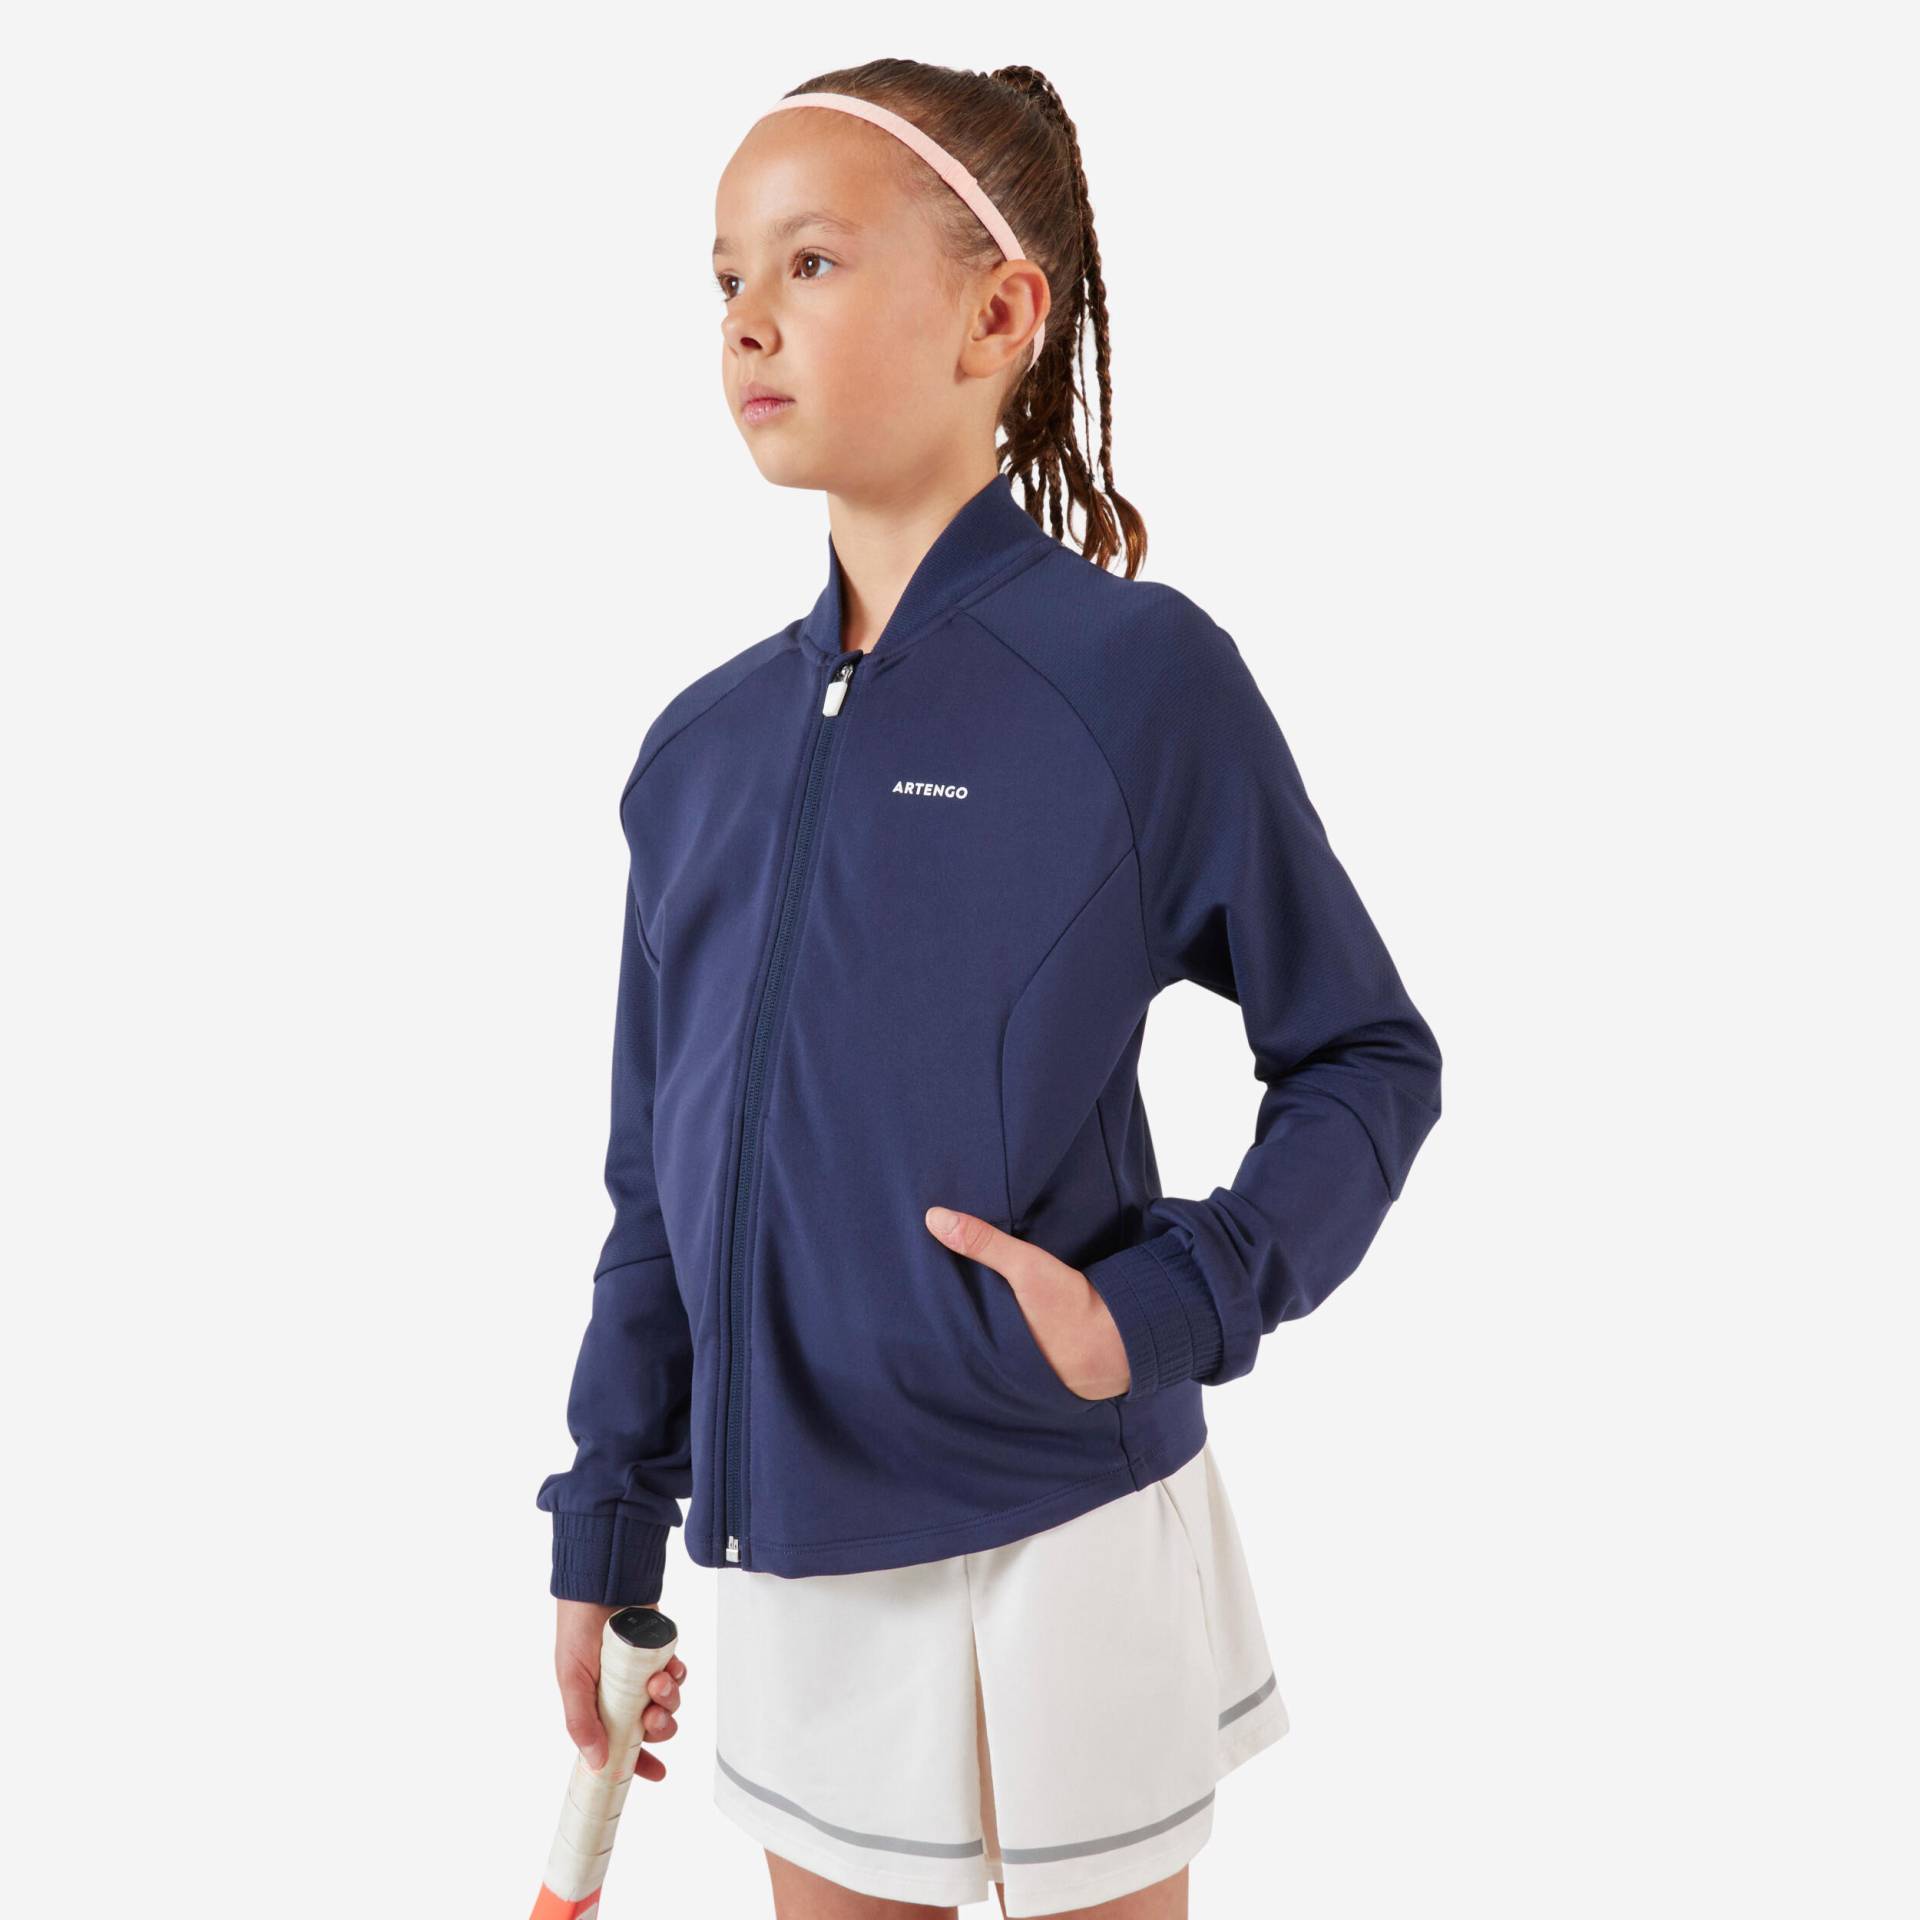 Tennisjacke Mädchen TJK500 marineblau von ARTENGO